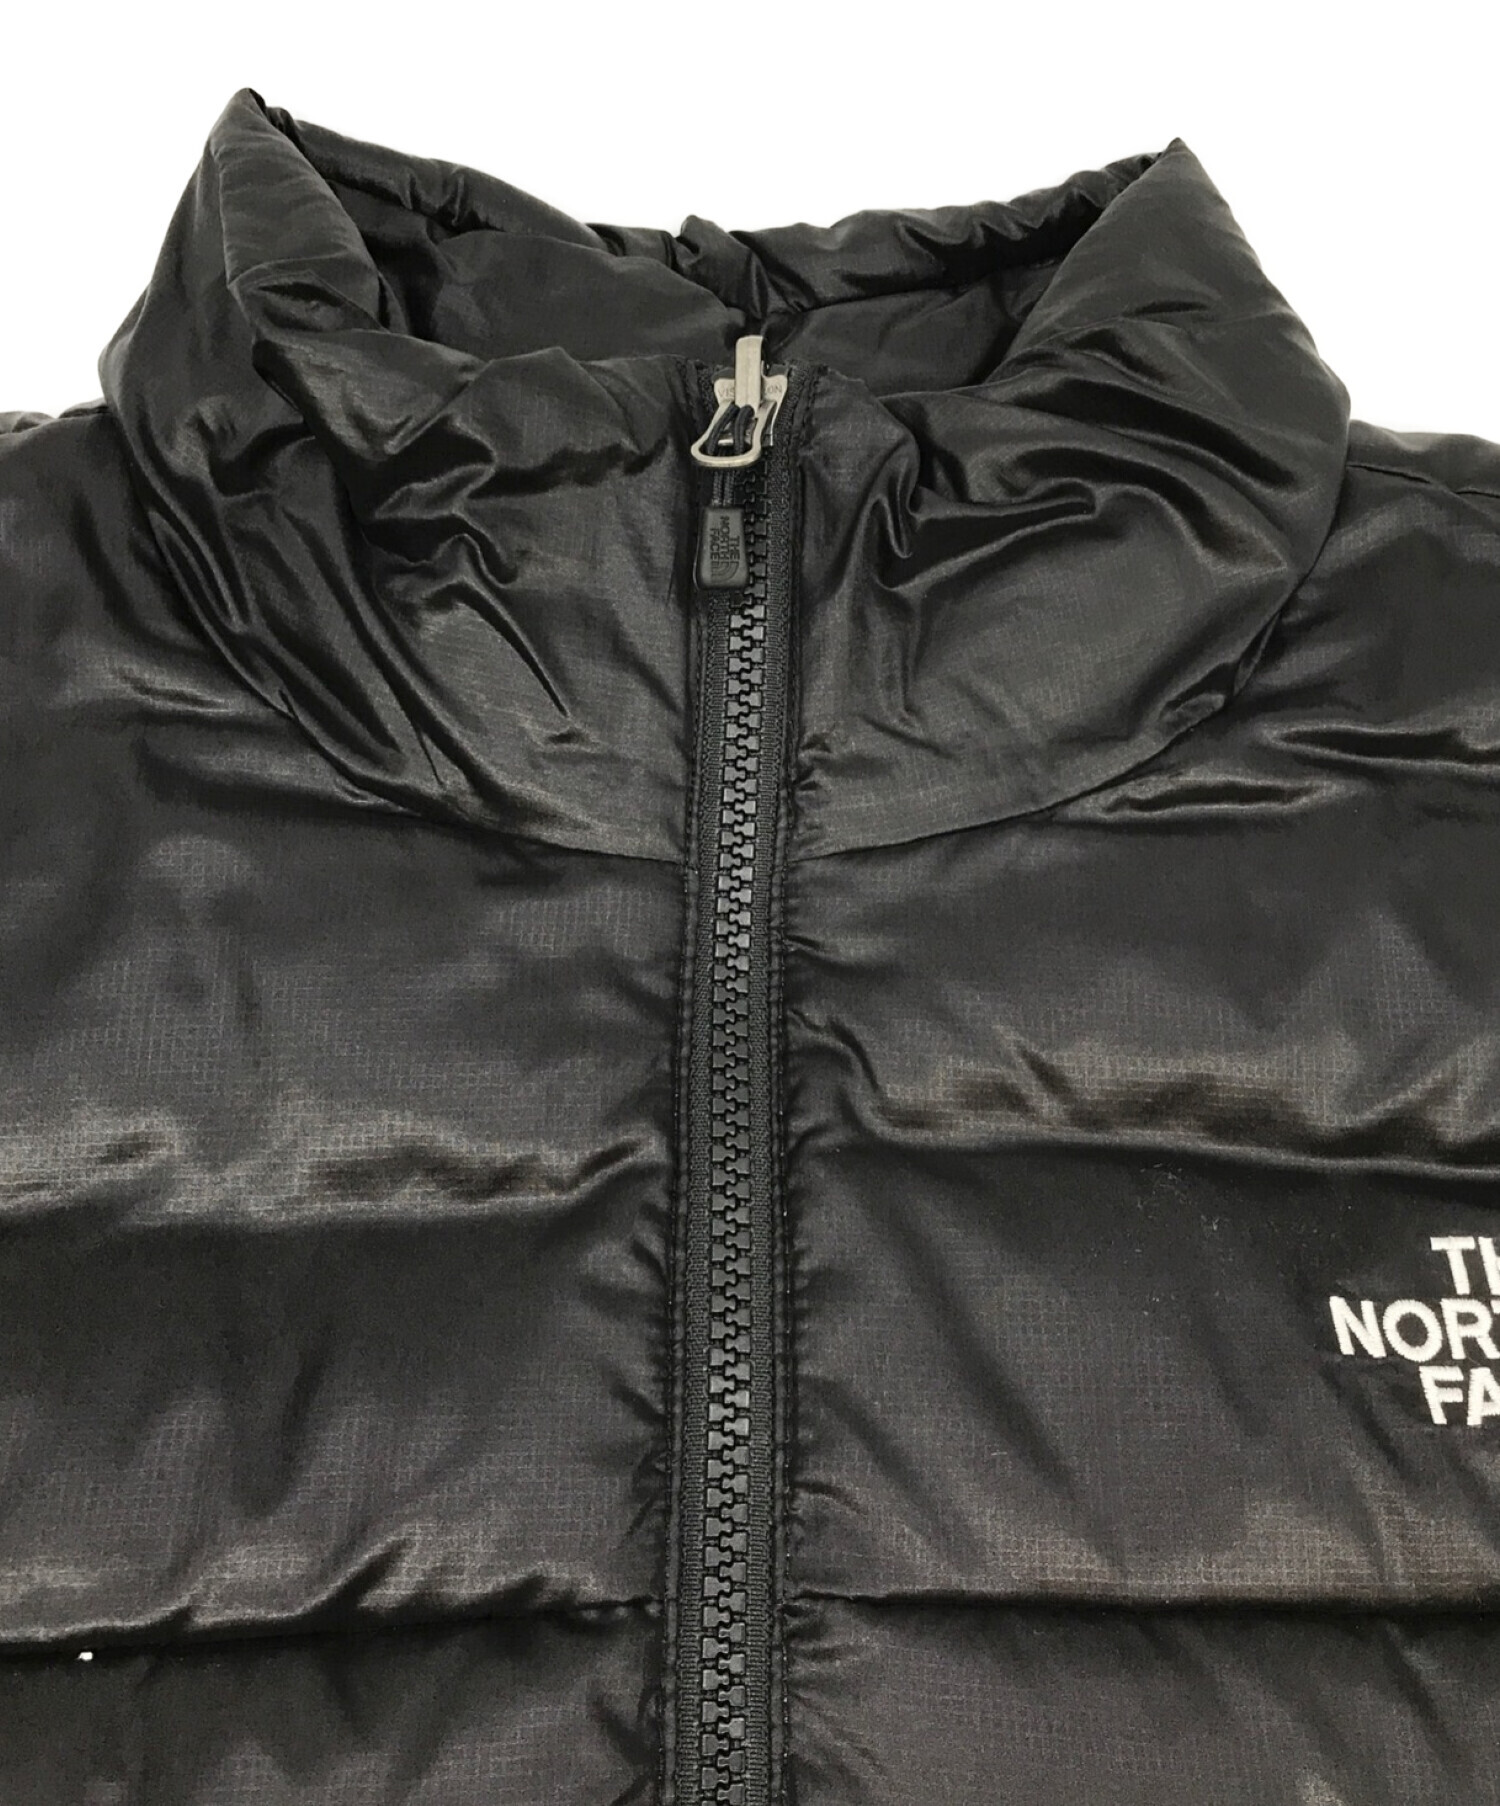 THE NORTH FACE (ザ ノース フェイス) フレアグースダウンジャケット550フィル ブラック サイズ:M